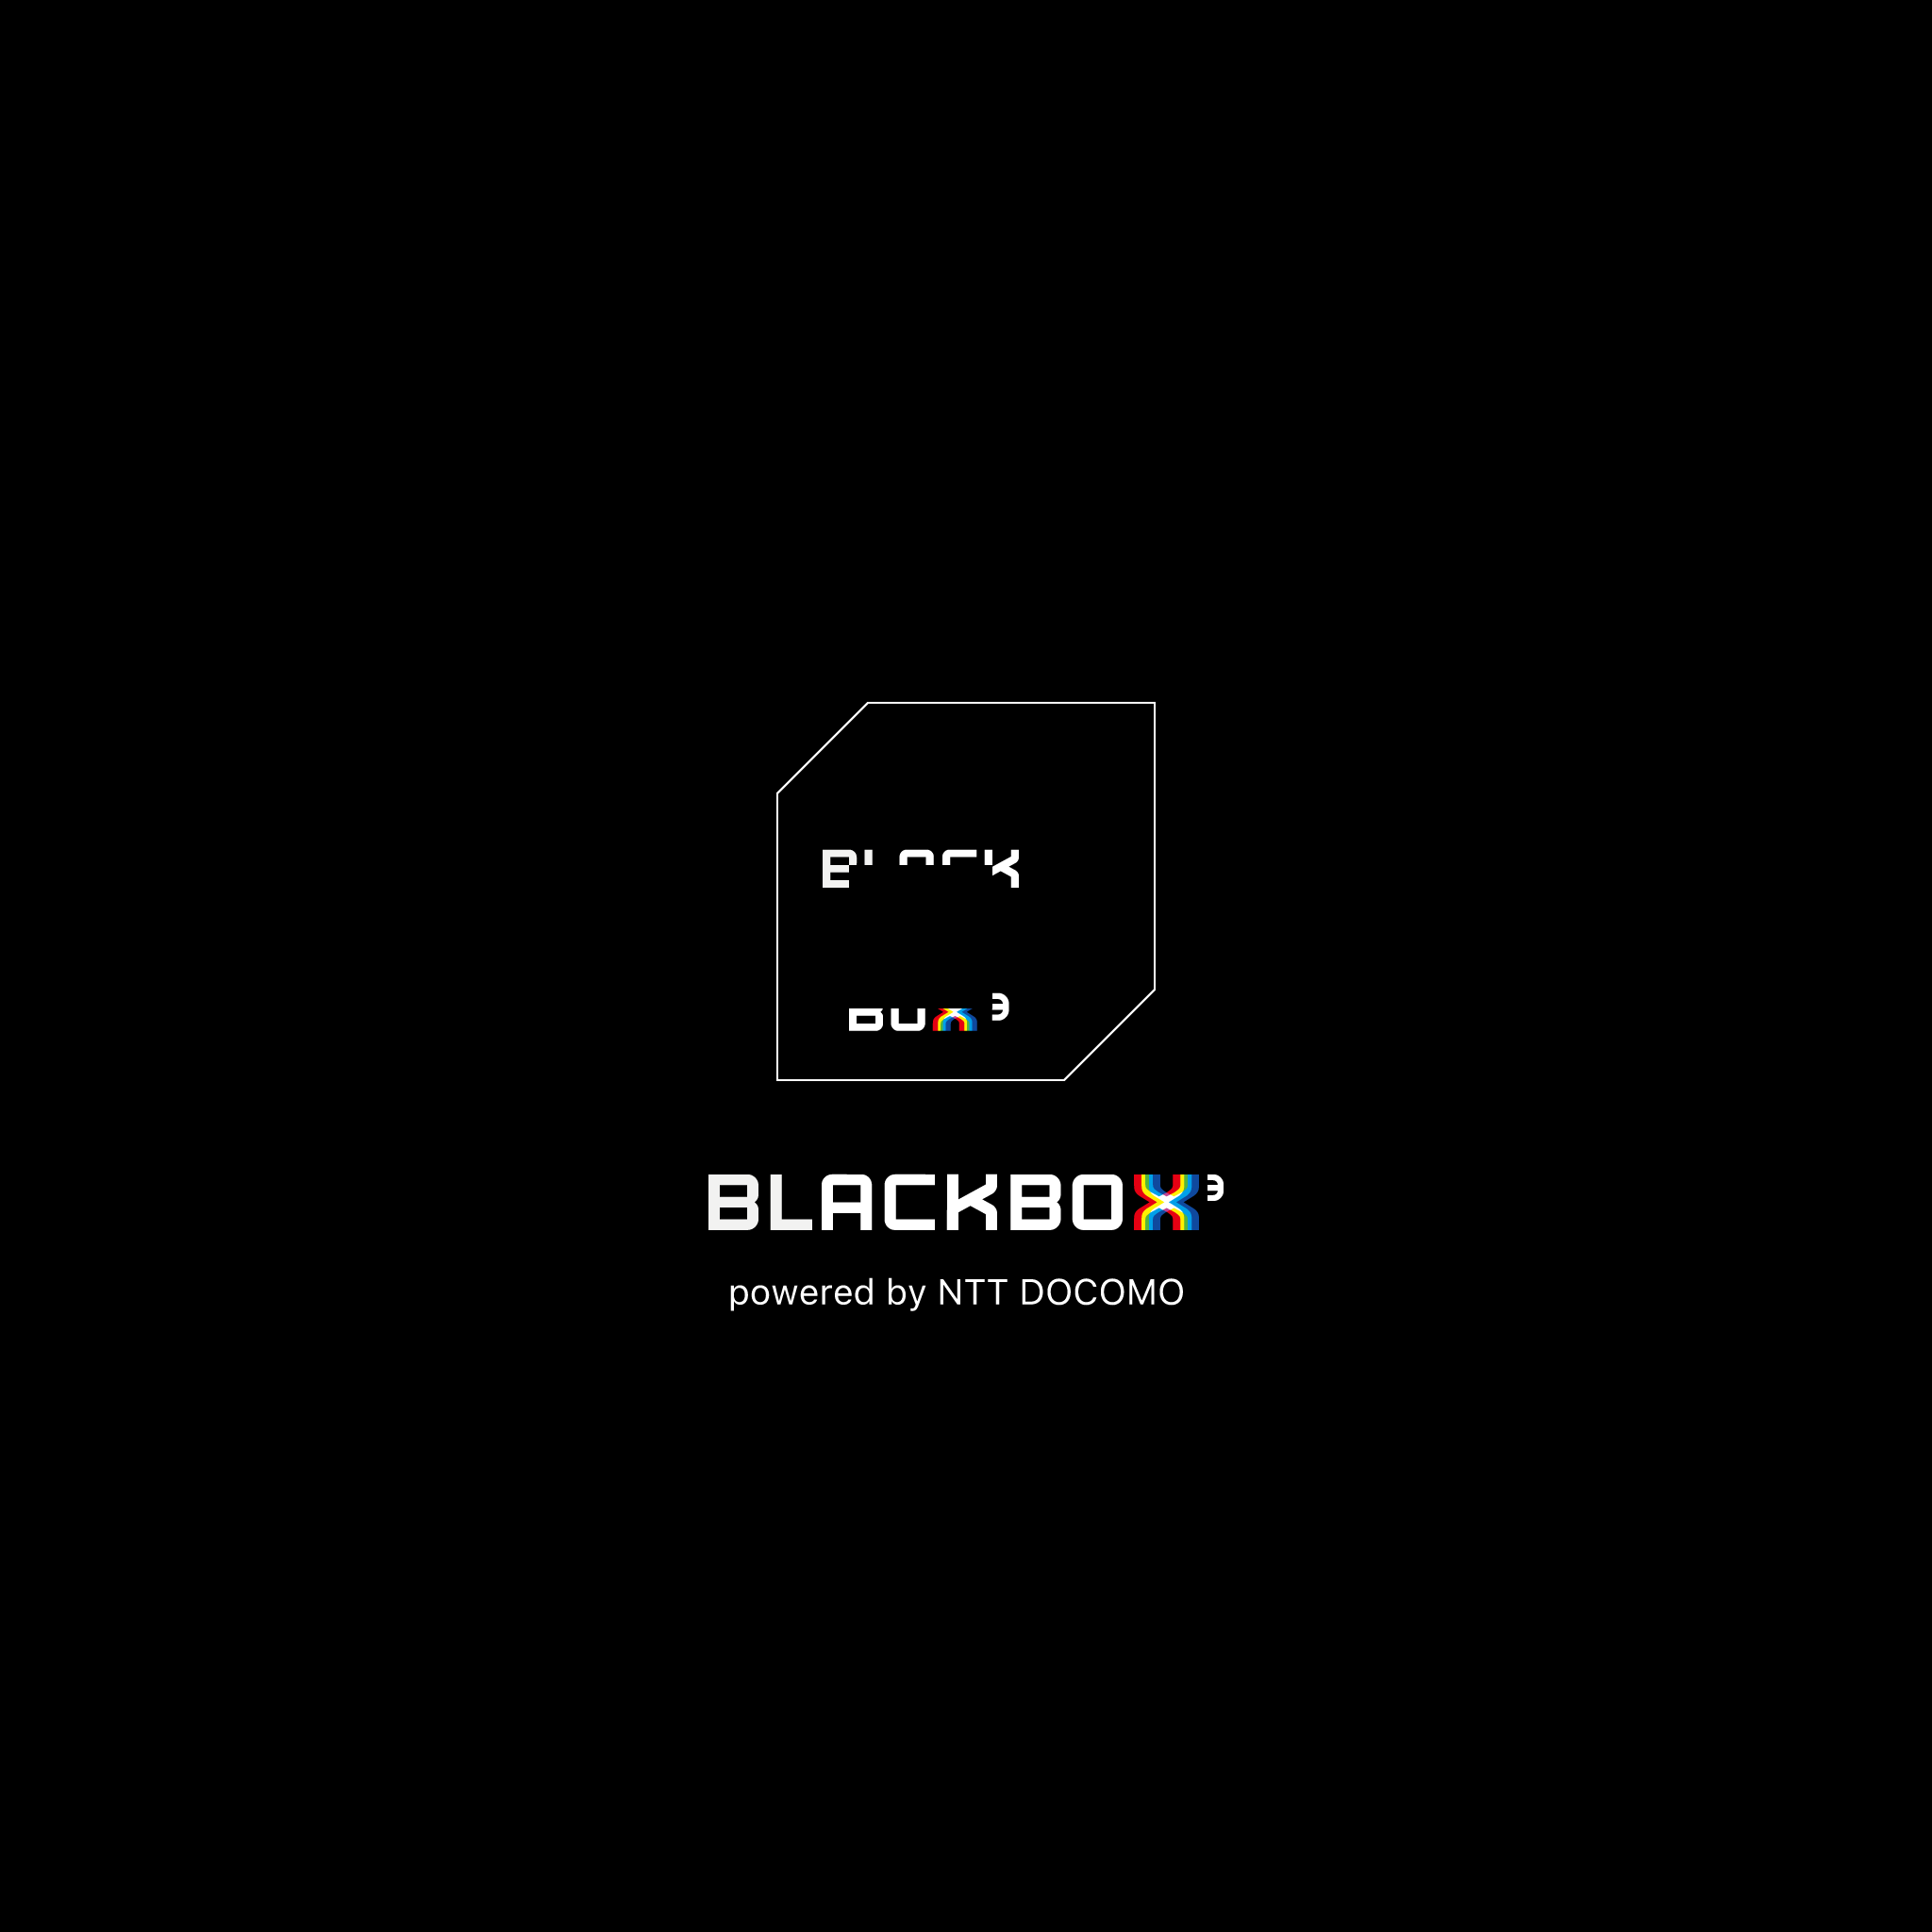 大型LEDパネル4面とメディアサーバーdisguiseを常設した日本初のスタジオ「BLACKBOX³」